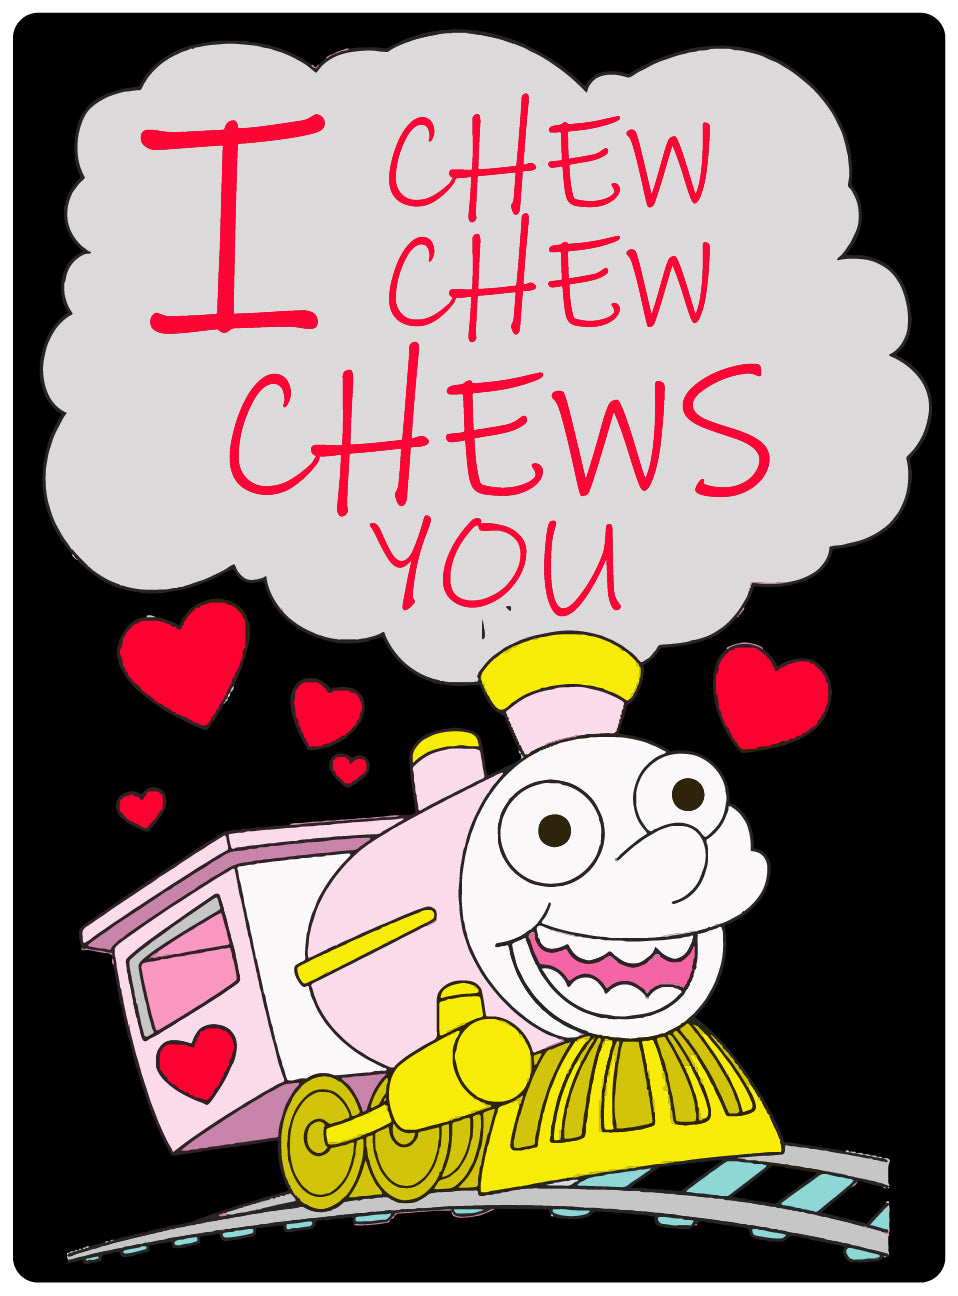 I Chew Chew Chews You - 500g Lollies